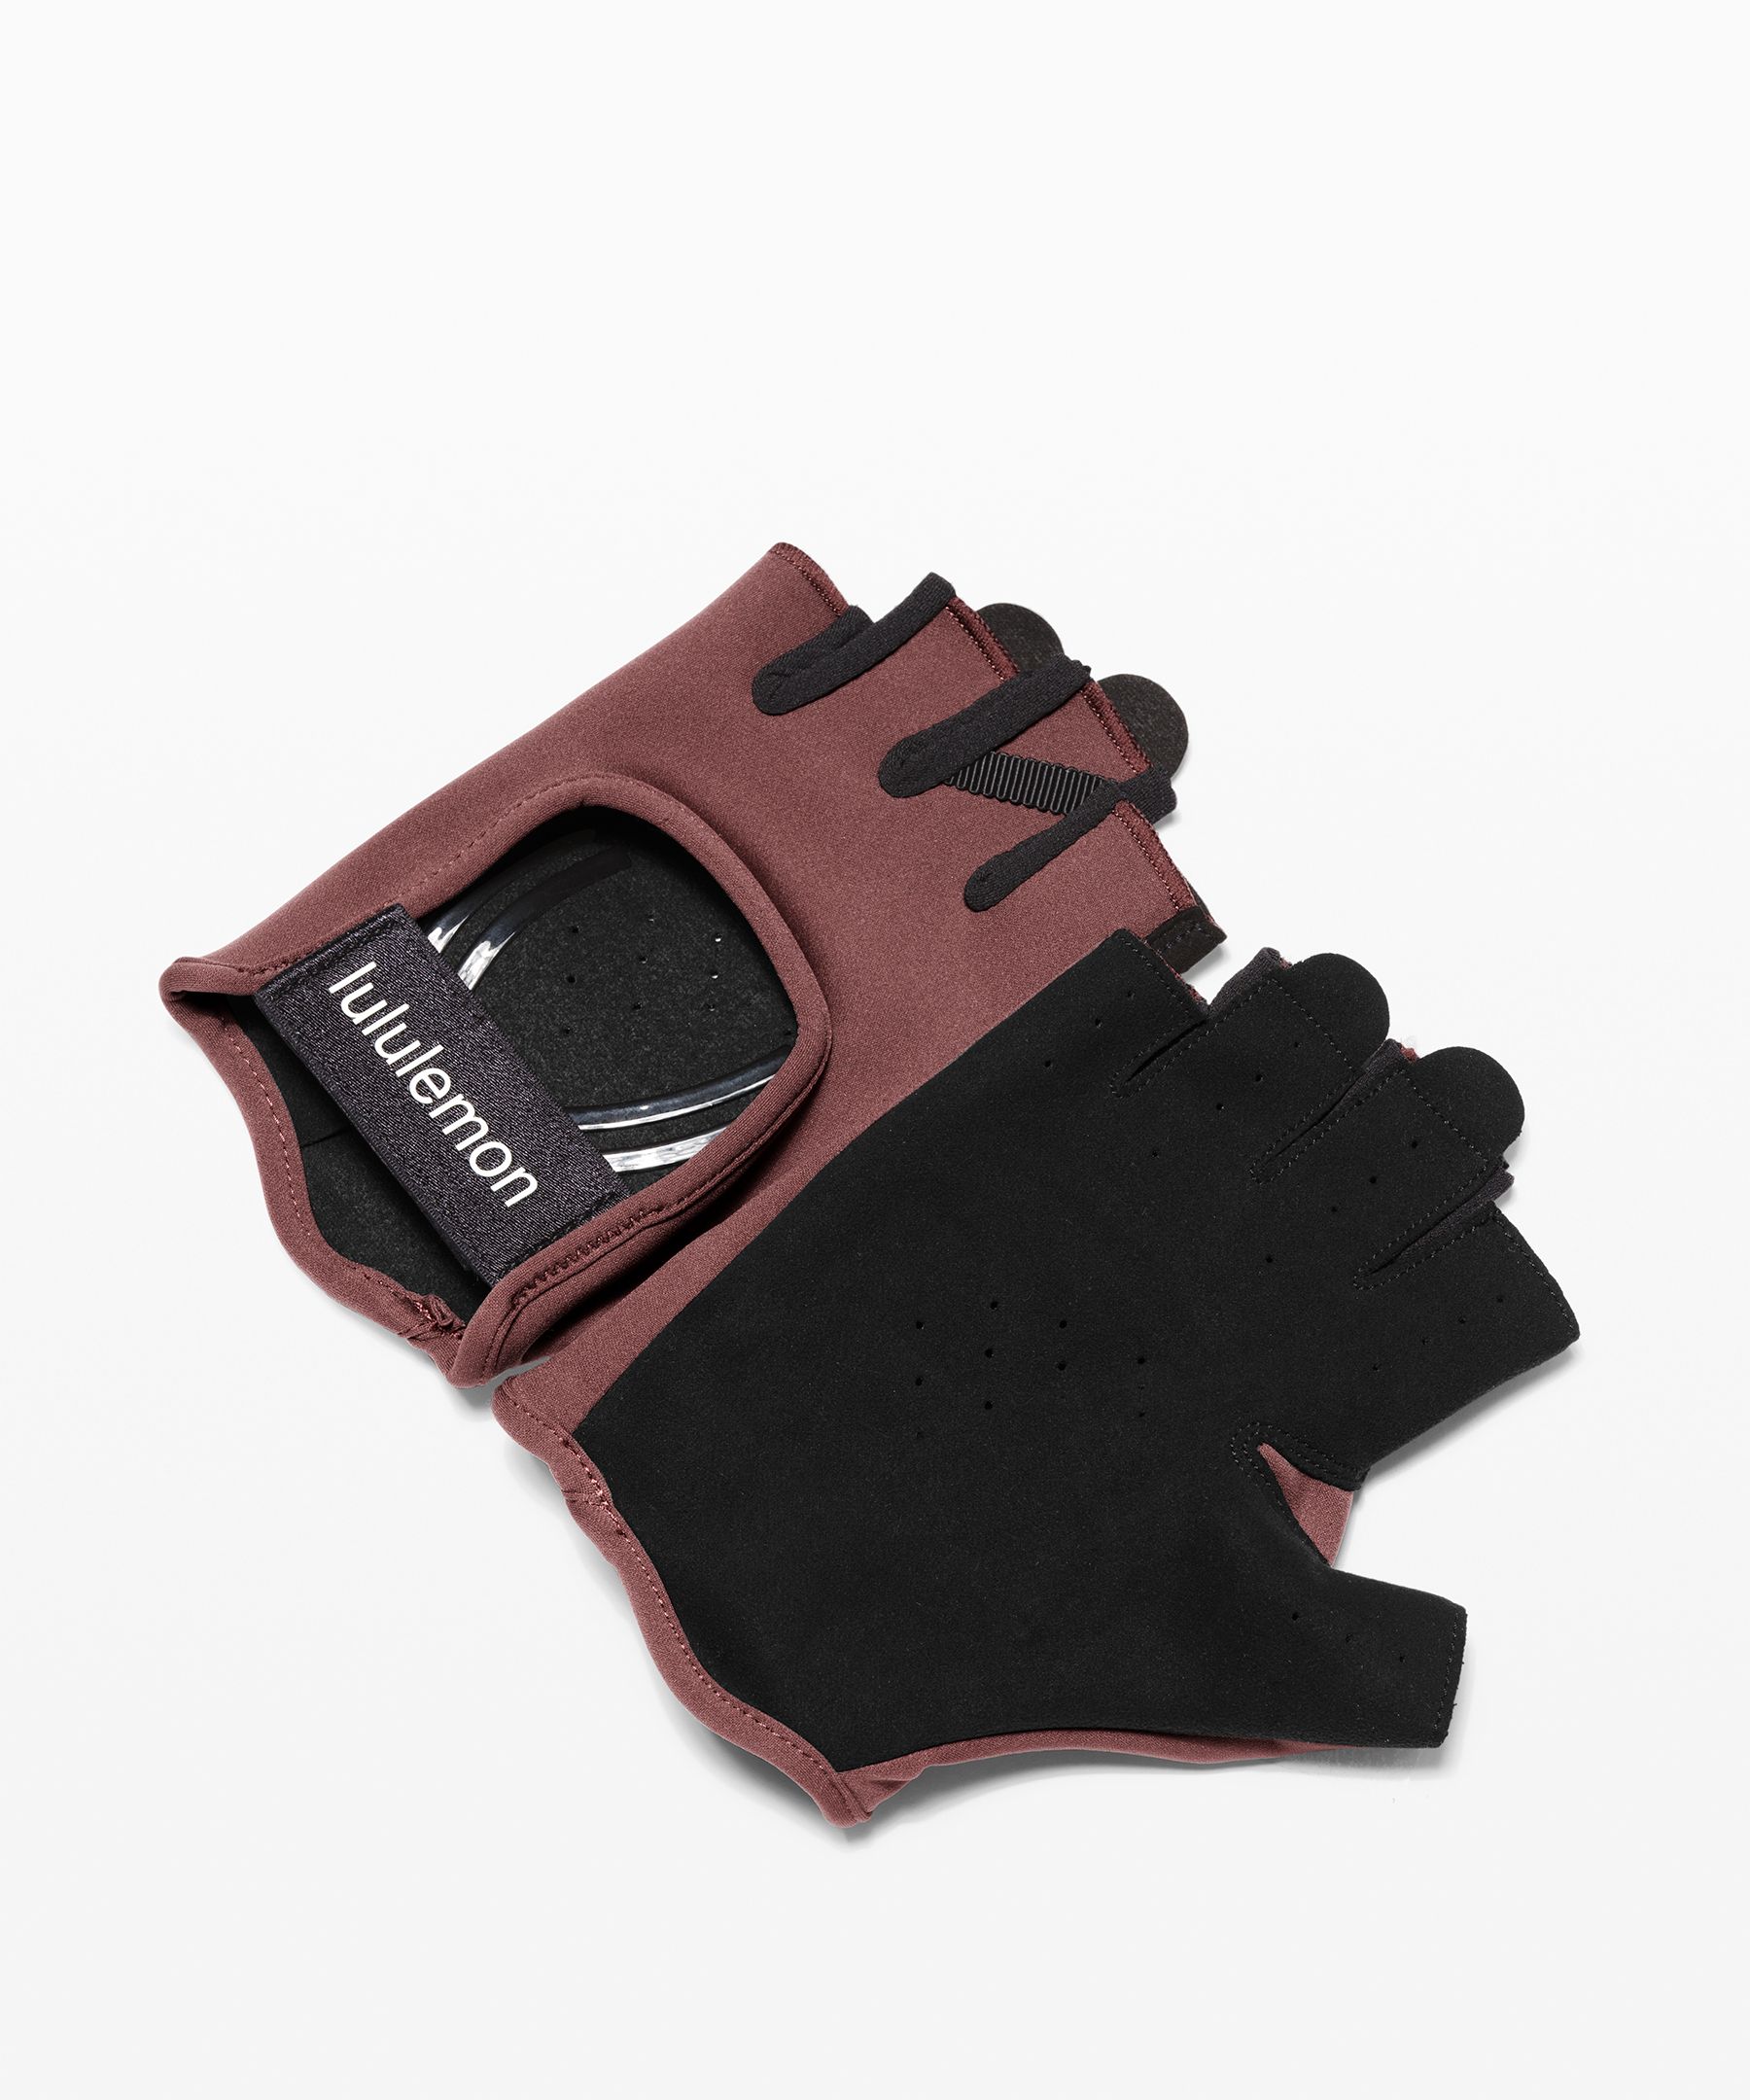 Lululemon Uplift Training Gloves In Cherry Cola/black